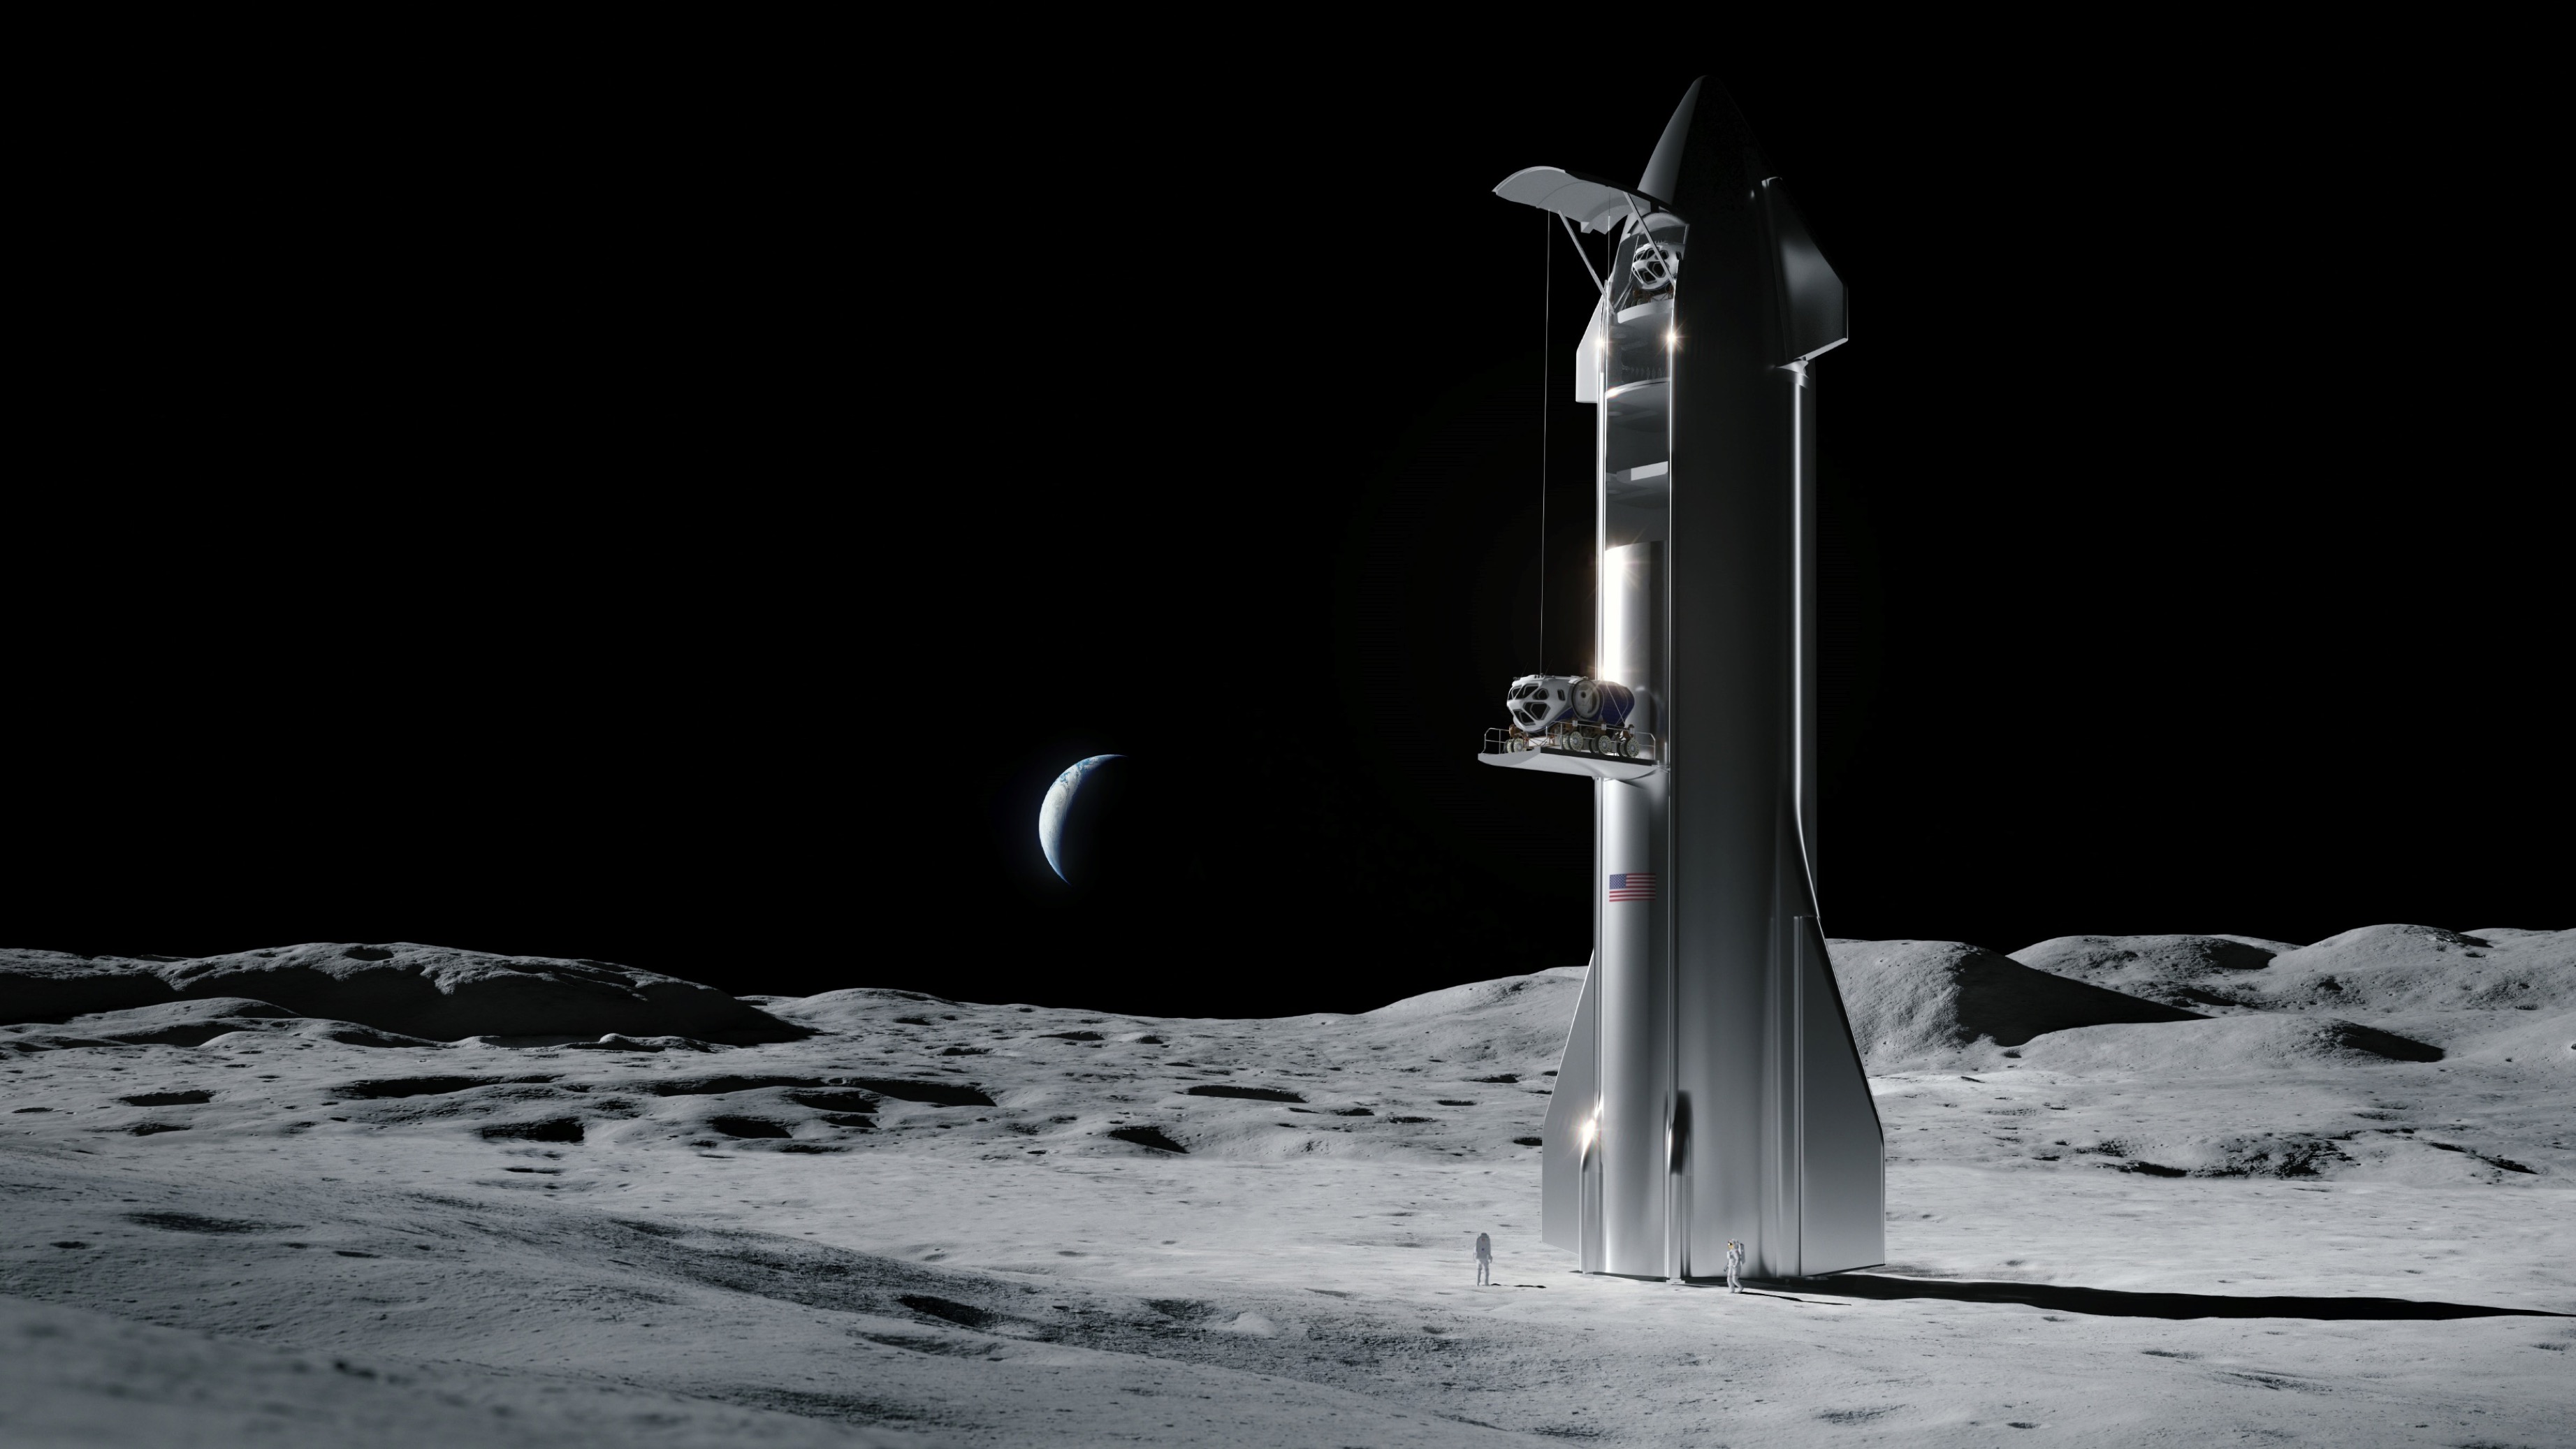 رسم توضيحي لفنان عن المركبة الفضائية SpaceX على سطح القمر.